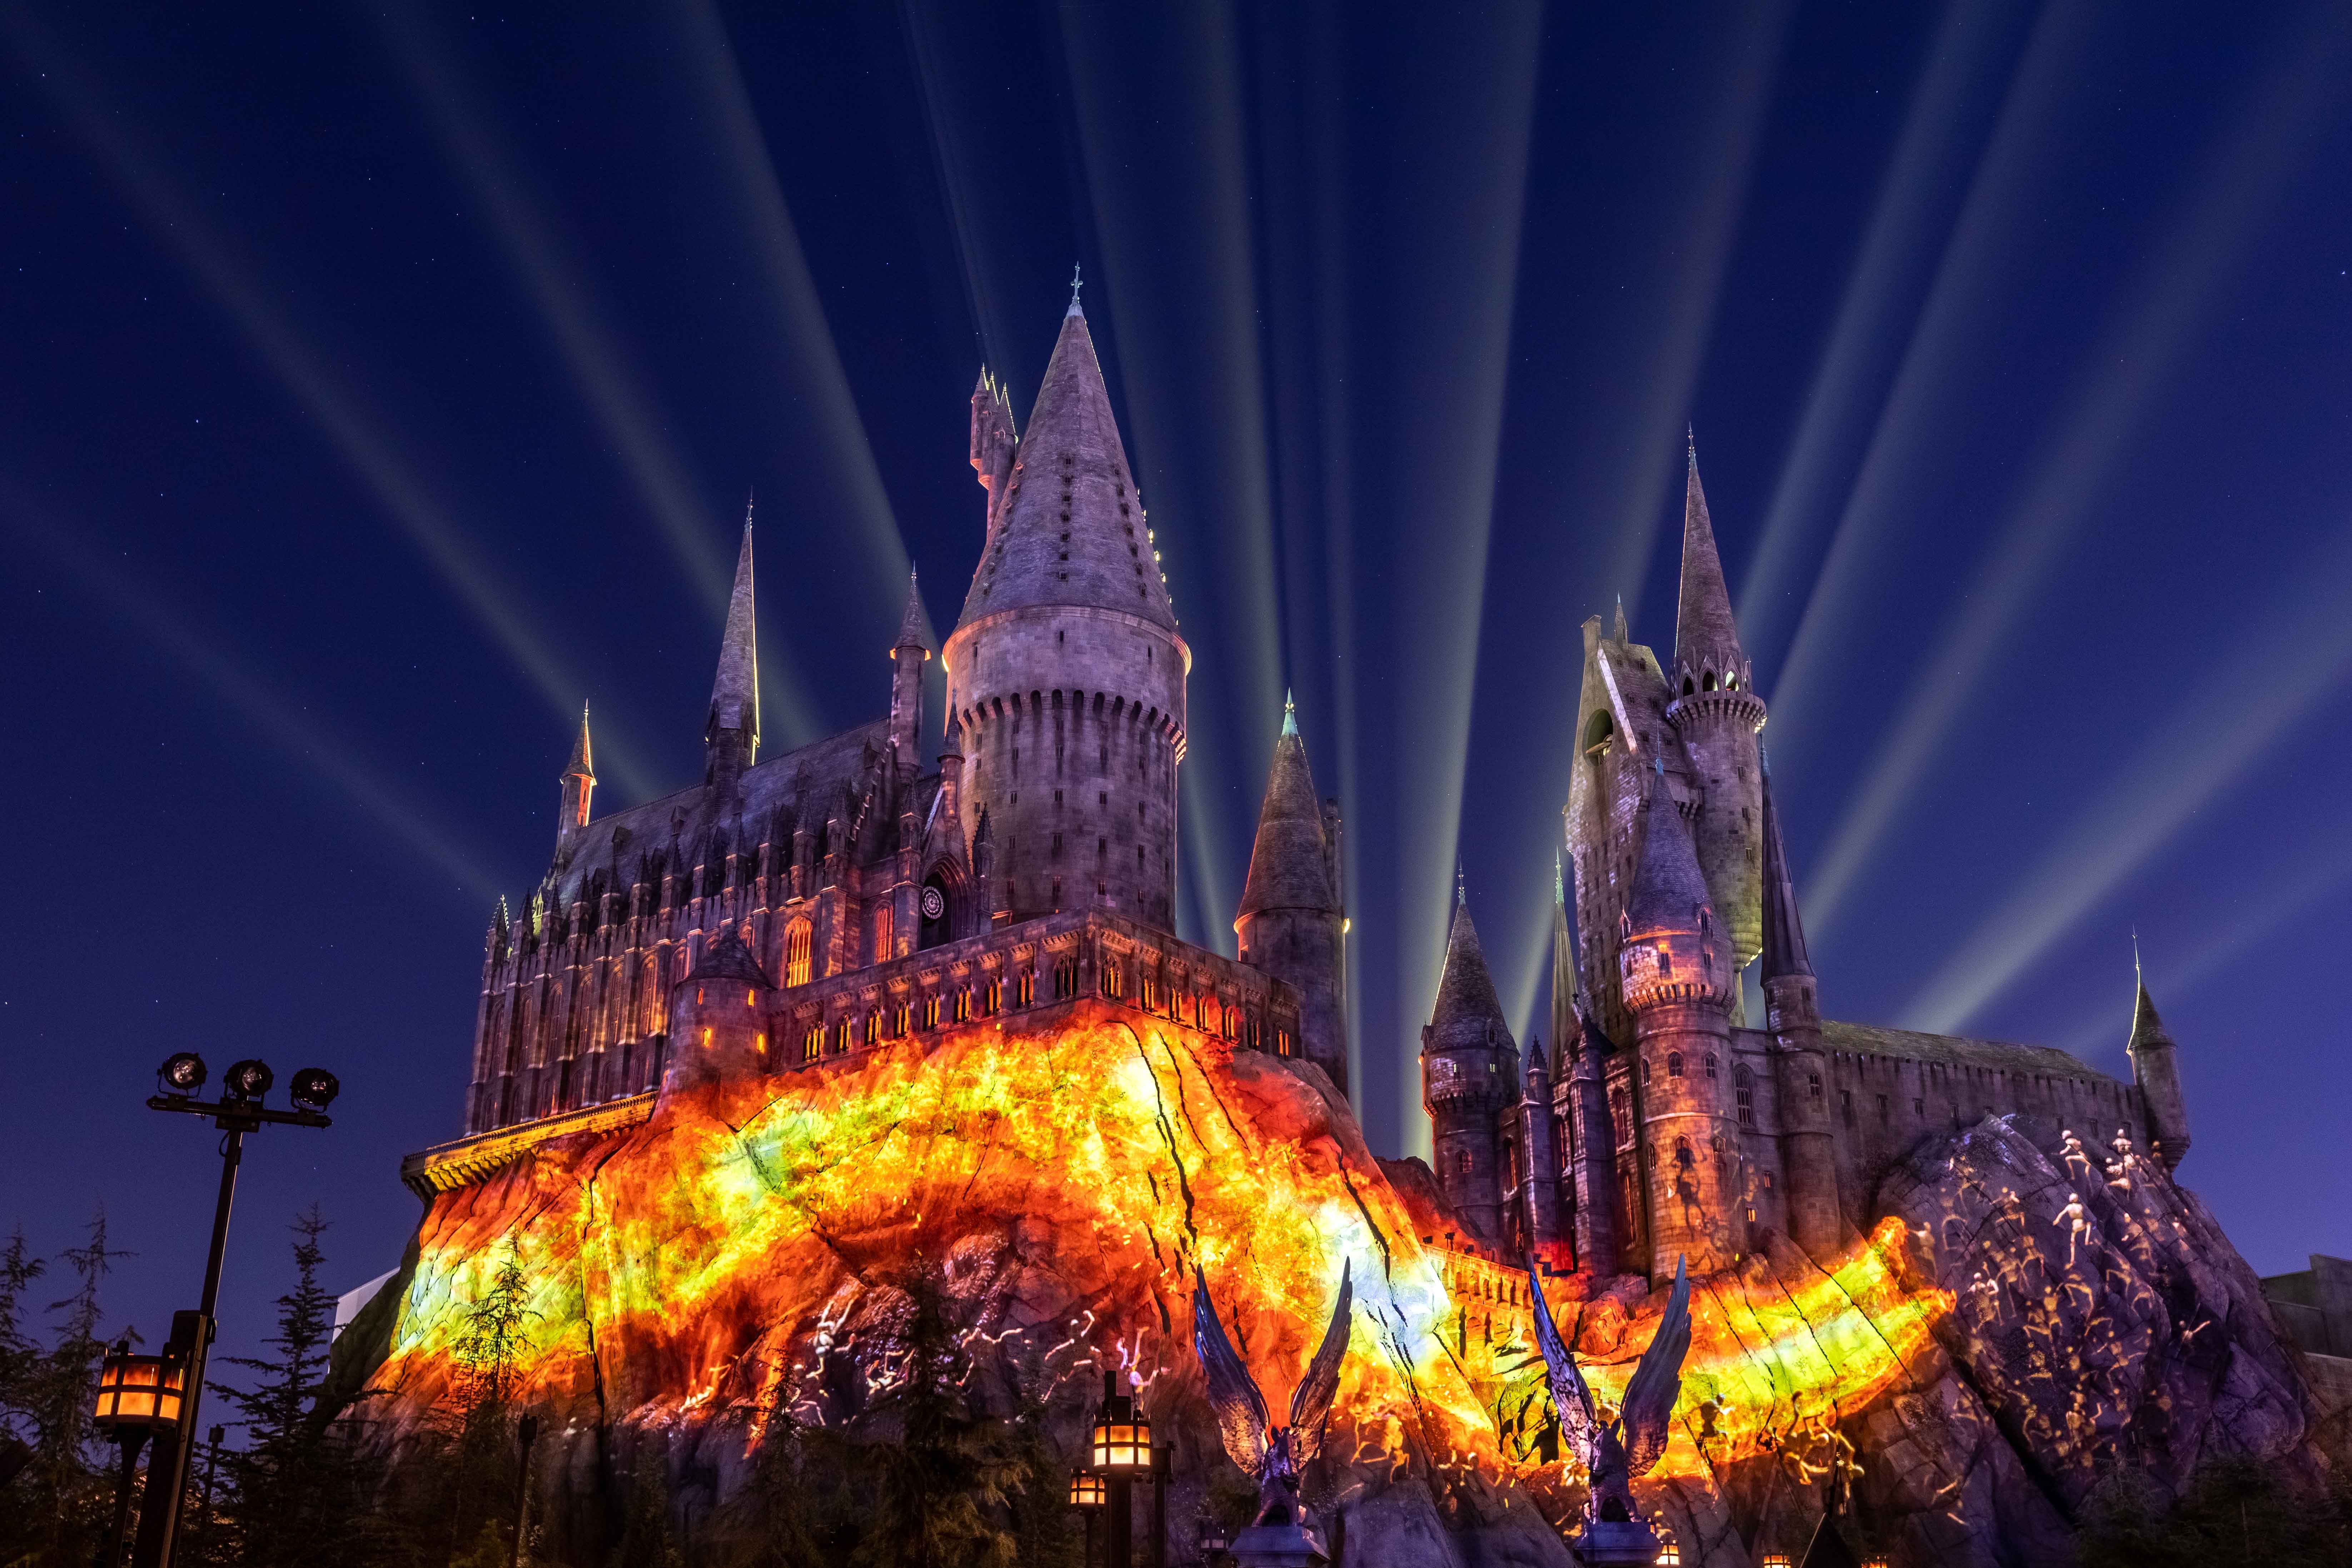 hogwarts castle pumpkin stencils